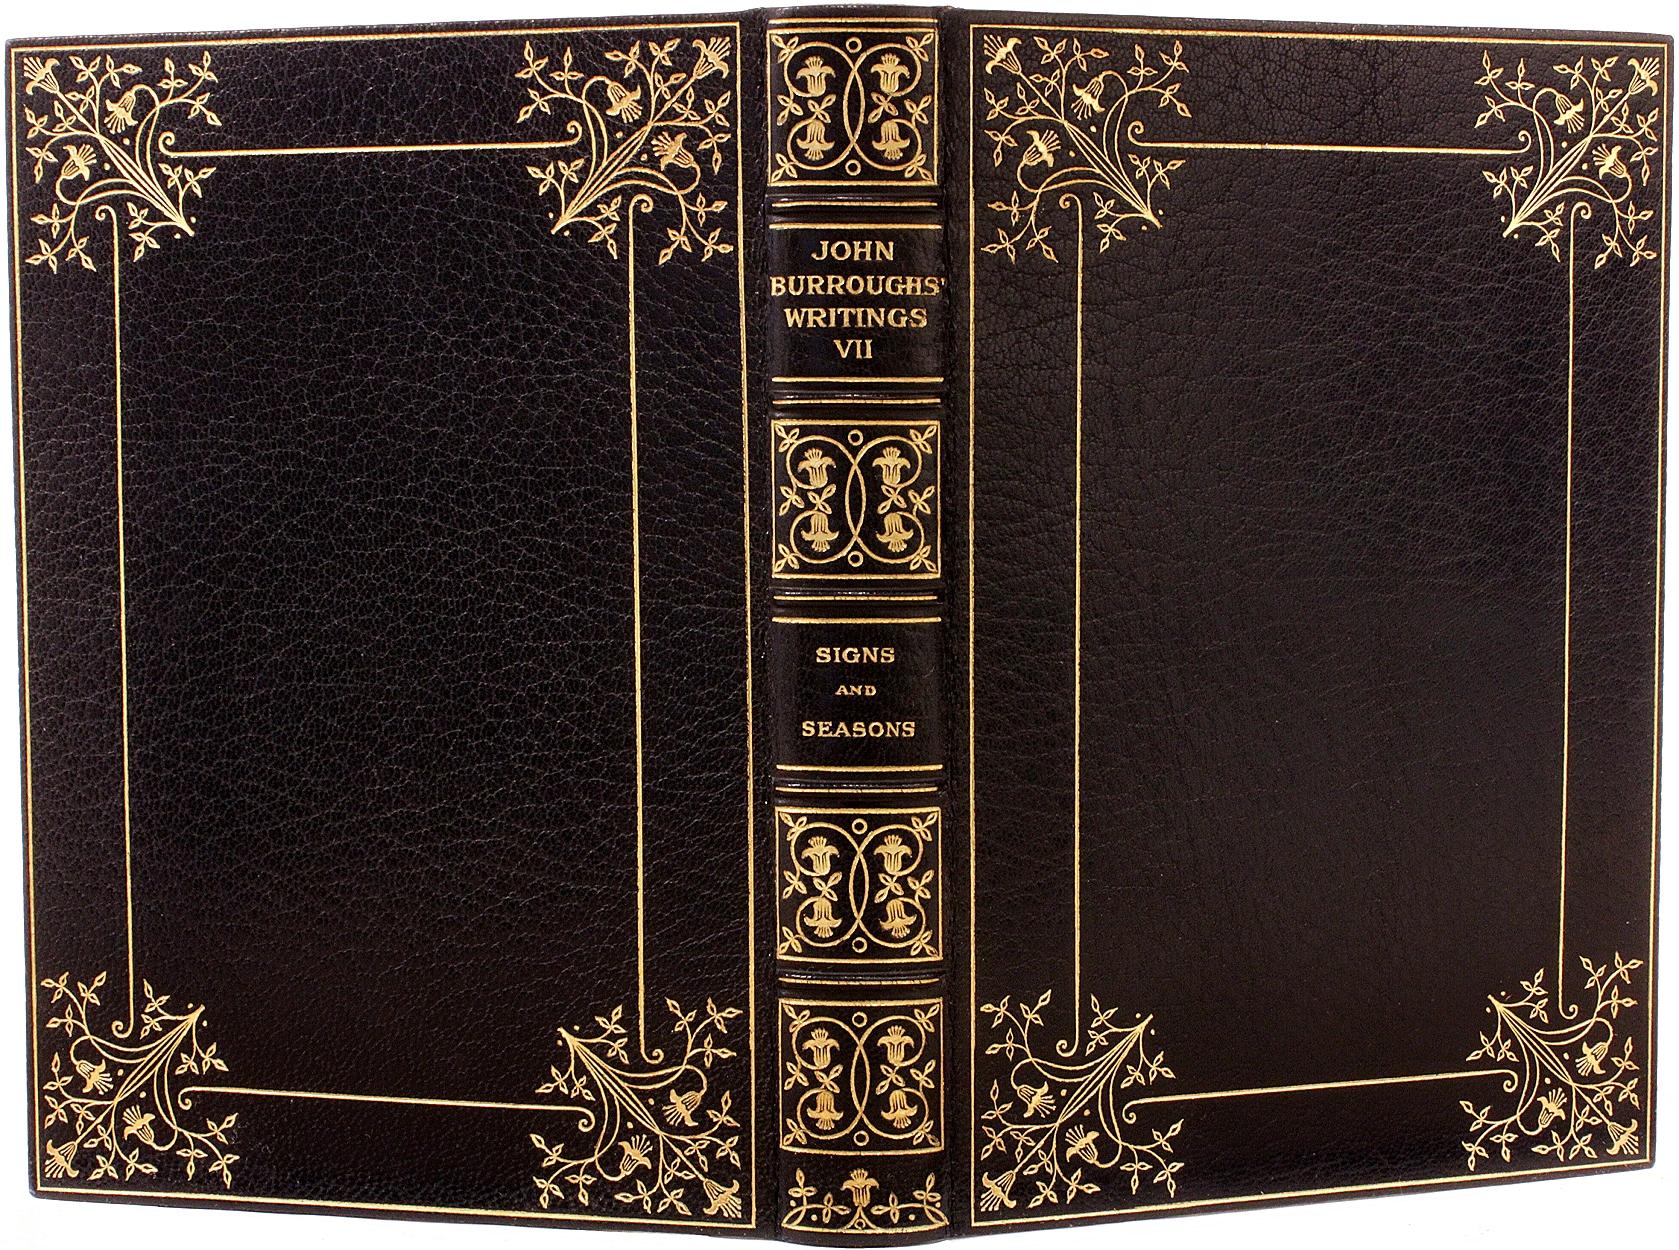 AUTHOR: BURROUGHS, John. 

TITLE: The Writings Of John Burroughs.

PUBLISHER: Boston: Houghton Mifflin Co., 1904.

DESCRIPTION: AUTOGRAPH EDITION. 15 vols., 8-7/8